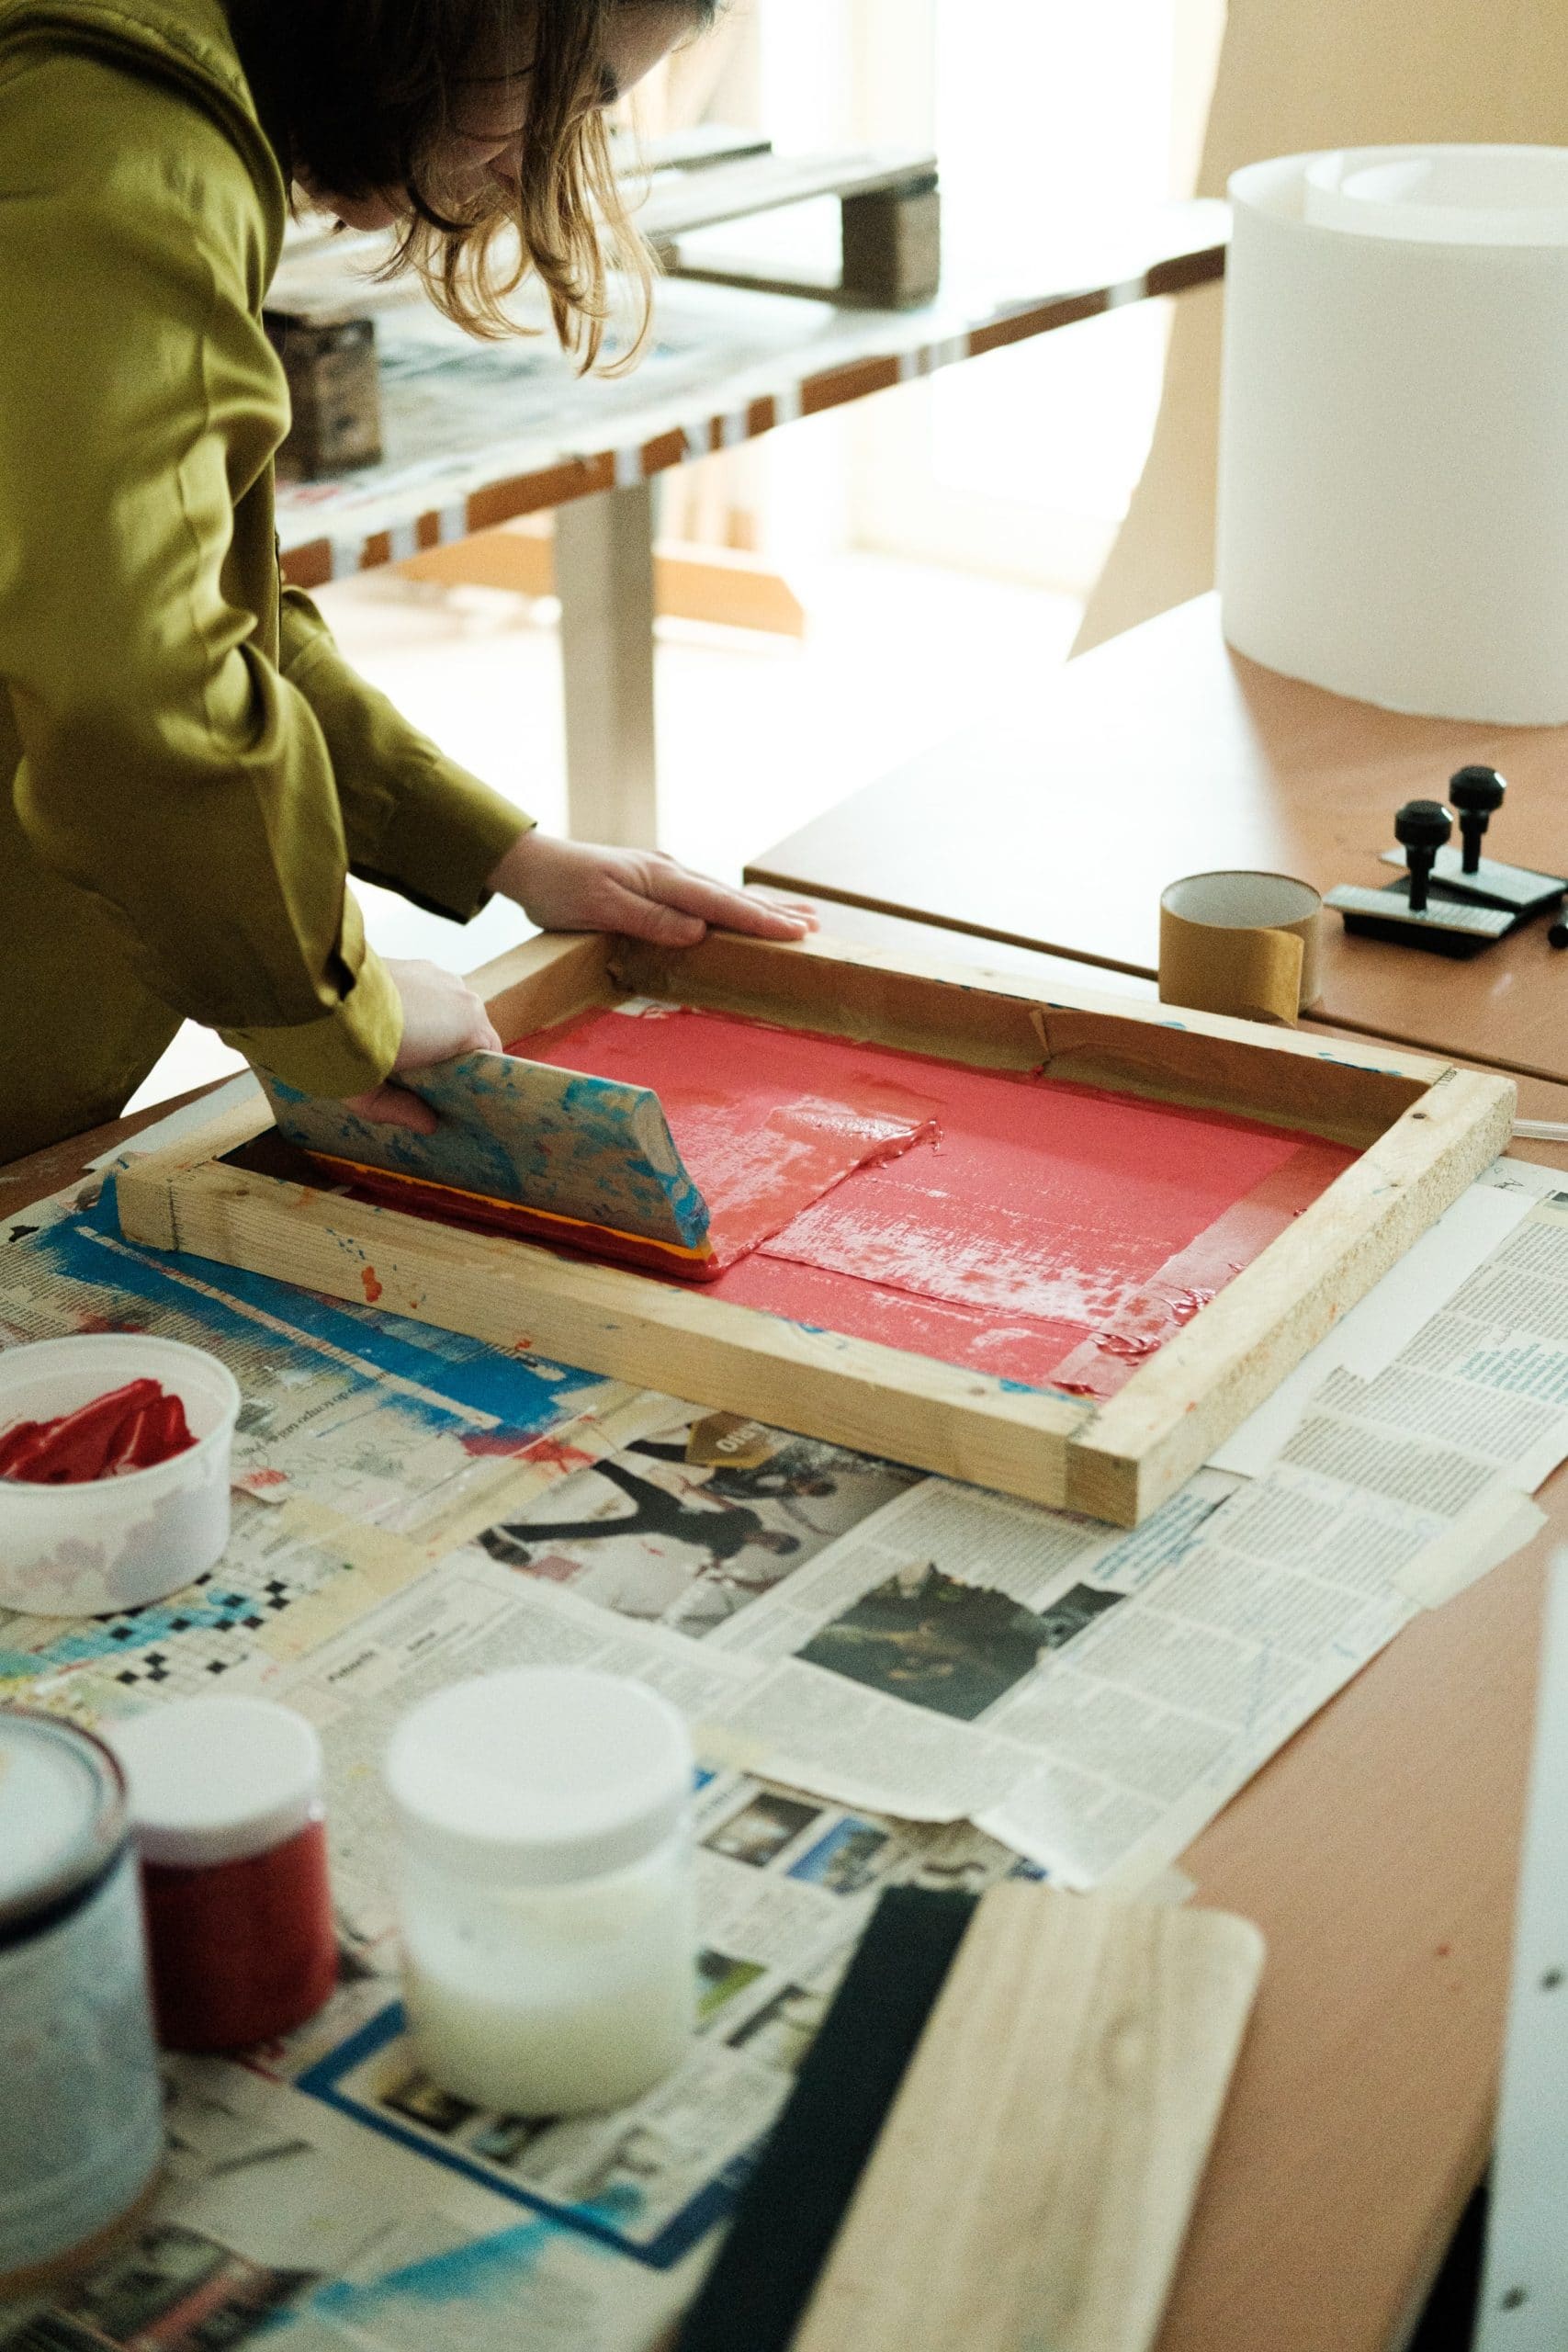 Artista aplica a tinta vermelha na placa de serigrafia com raclete.